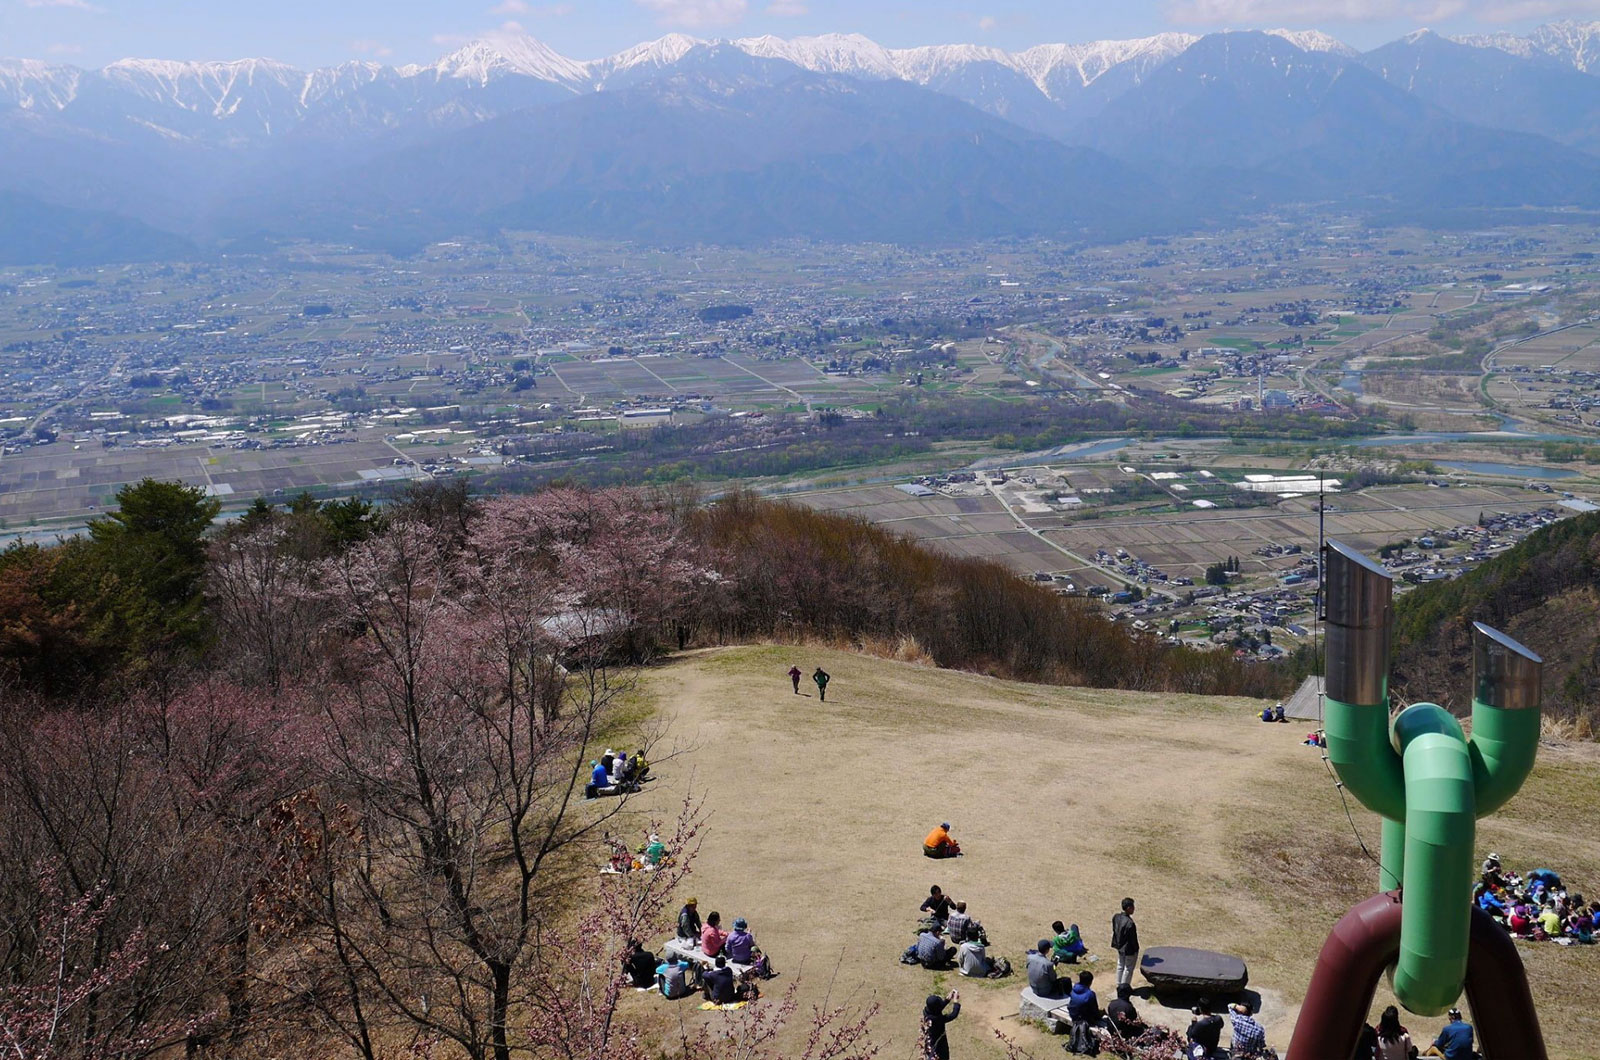 Mt. Nagamine